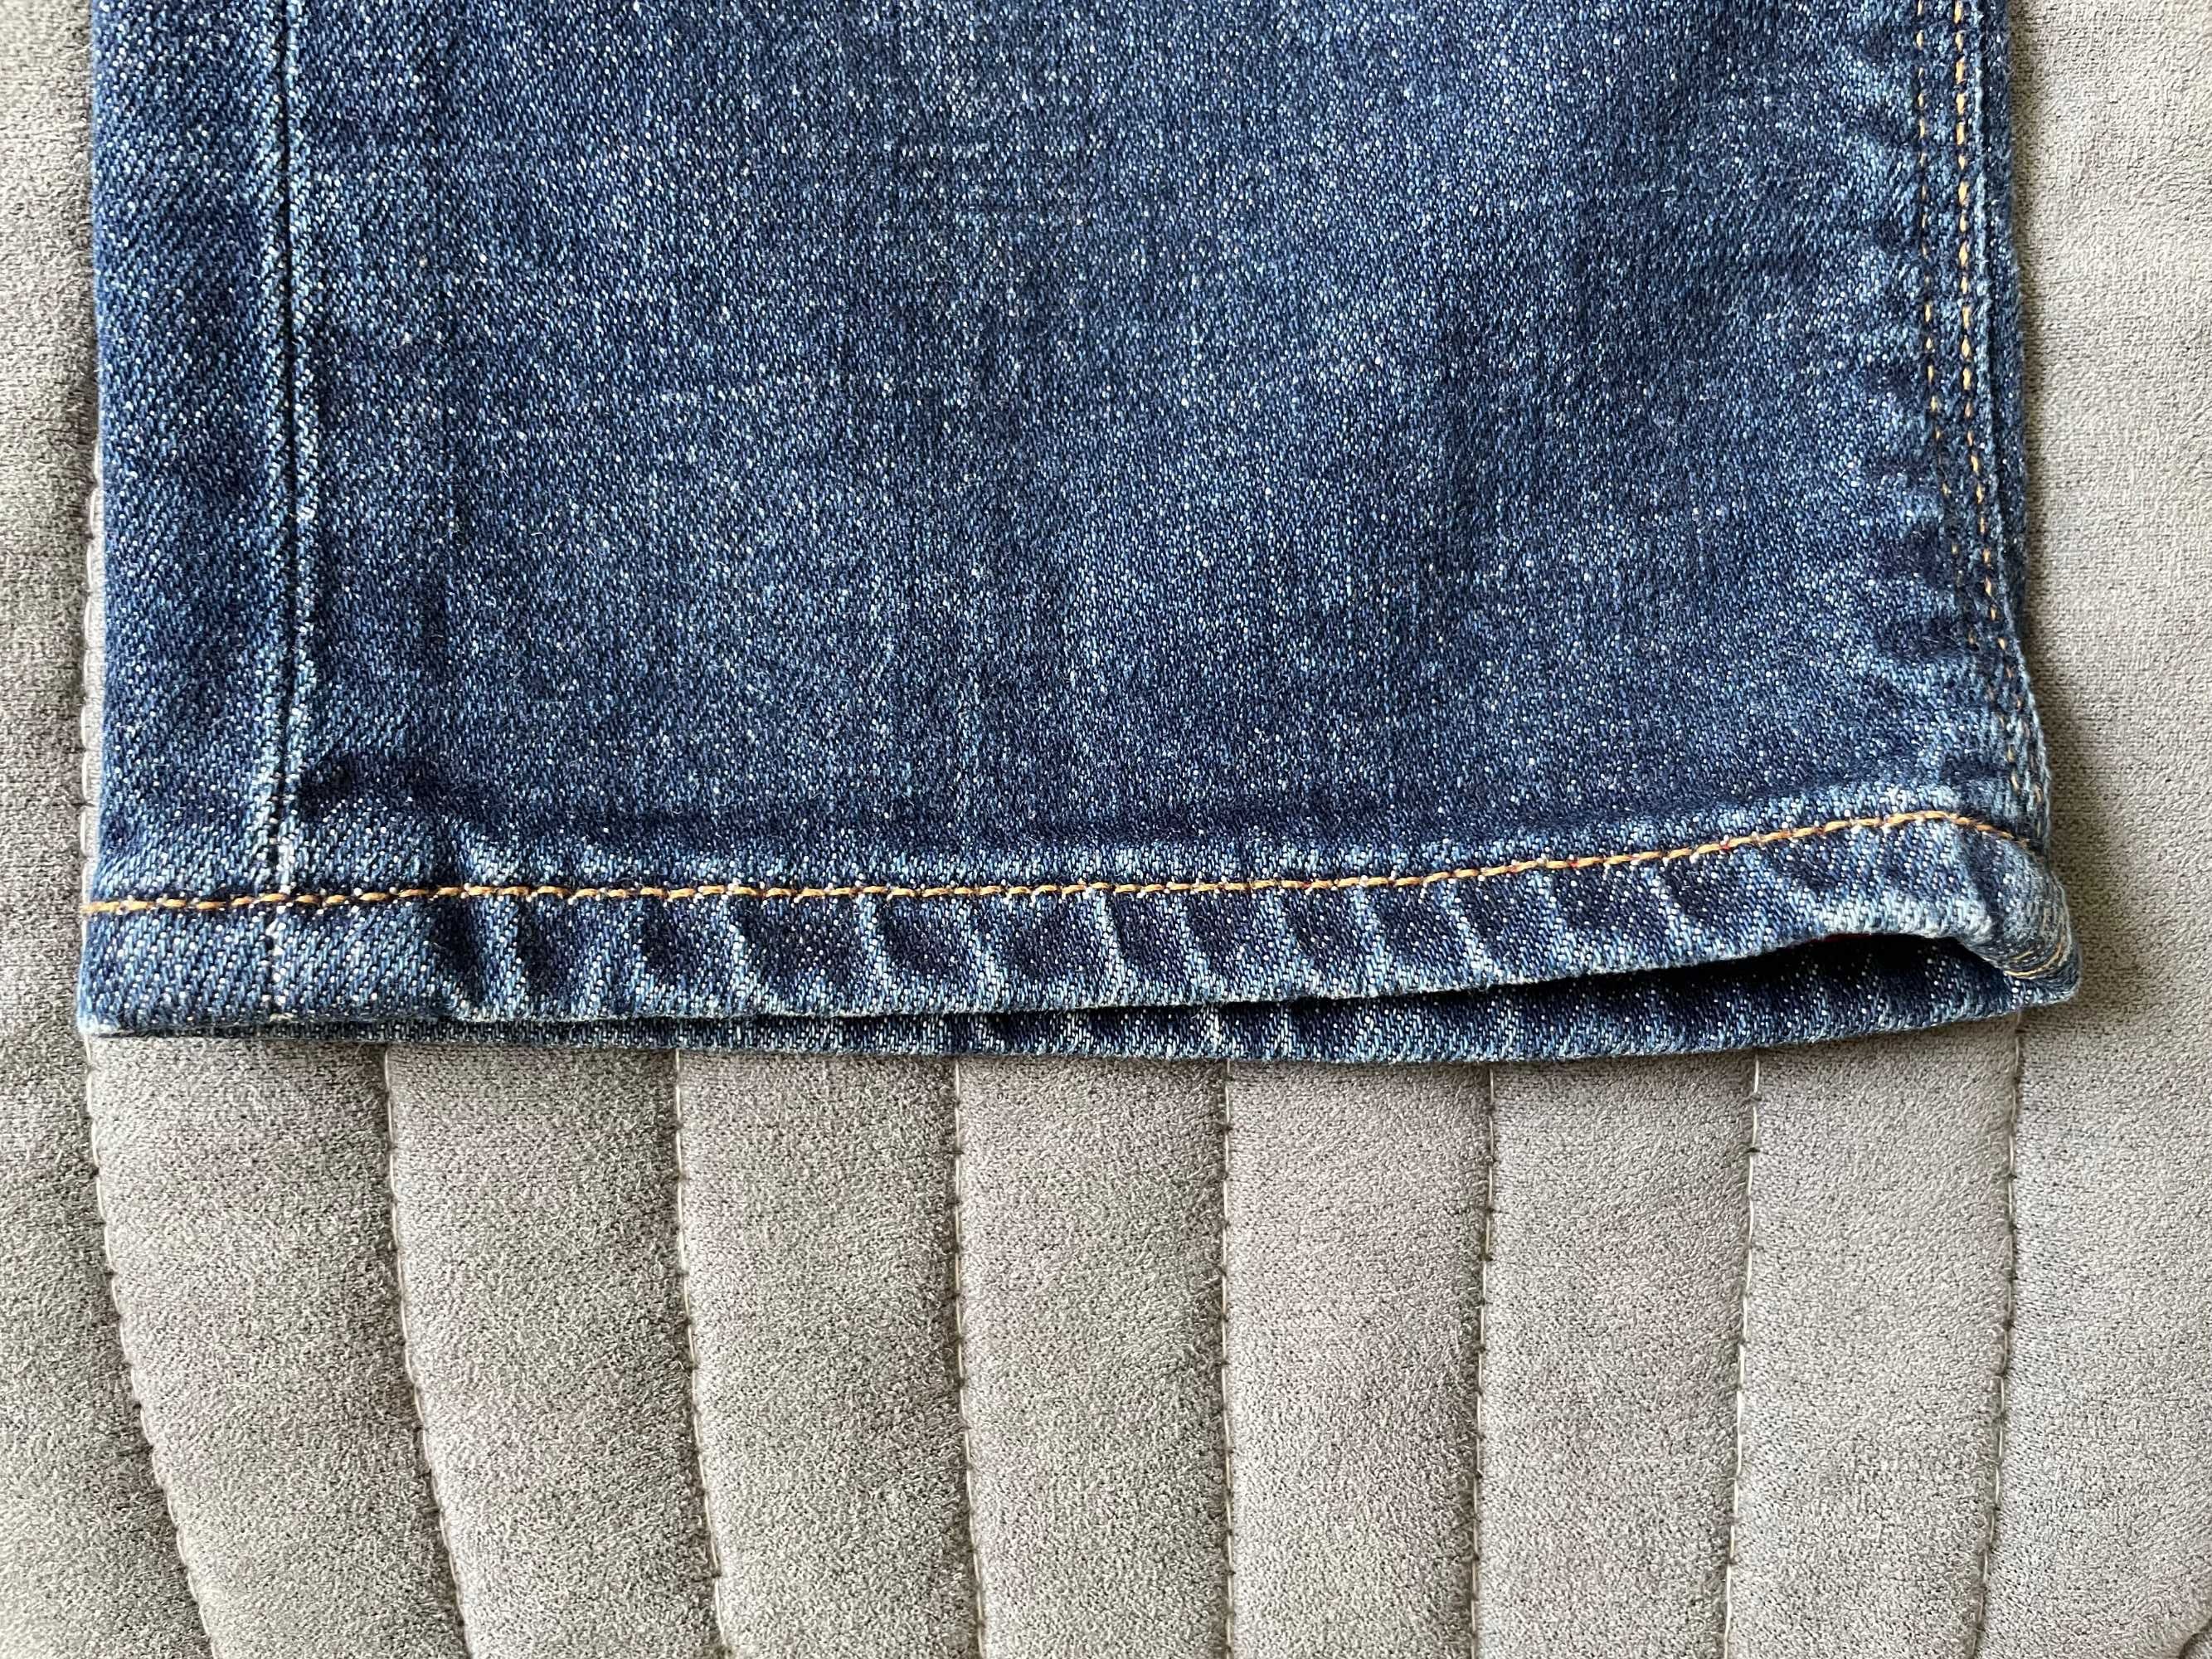 Sprzedam tanio jeansy Tommy Hilfiger -możliwy odbiór osobisty Sopot